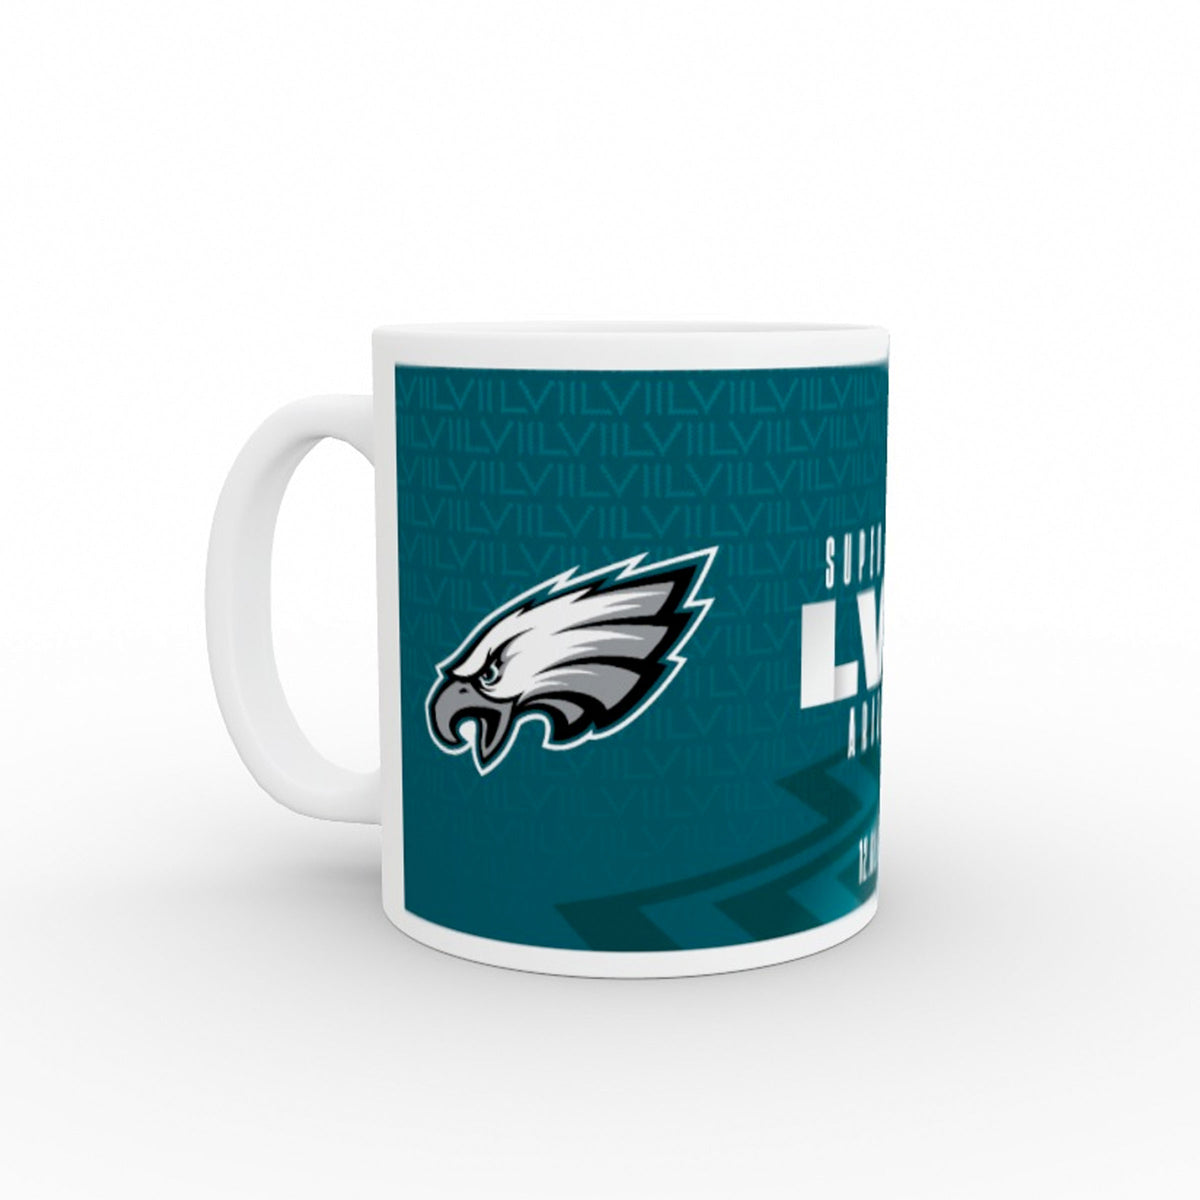 Super Bowl LVII Philadelphia Eagles Team Mug